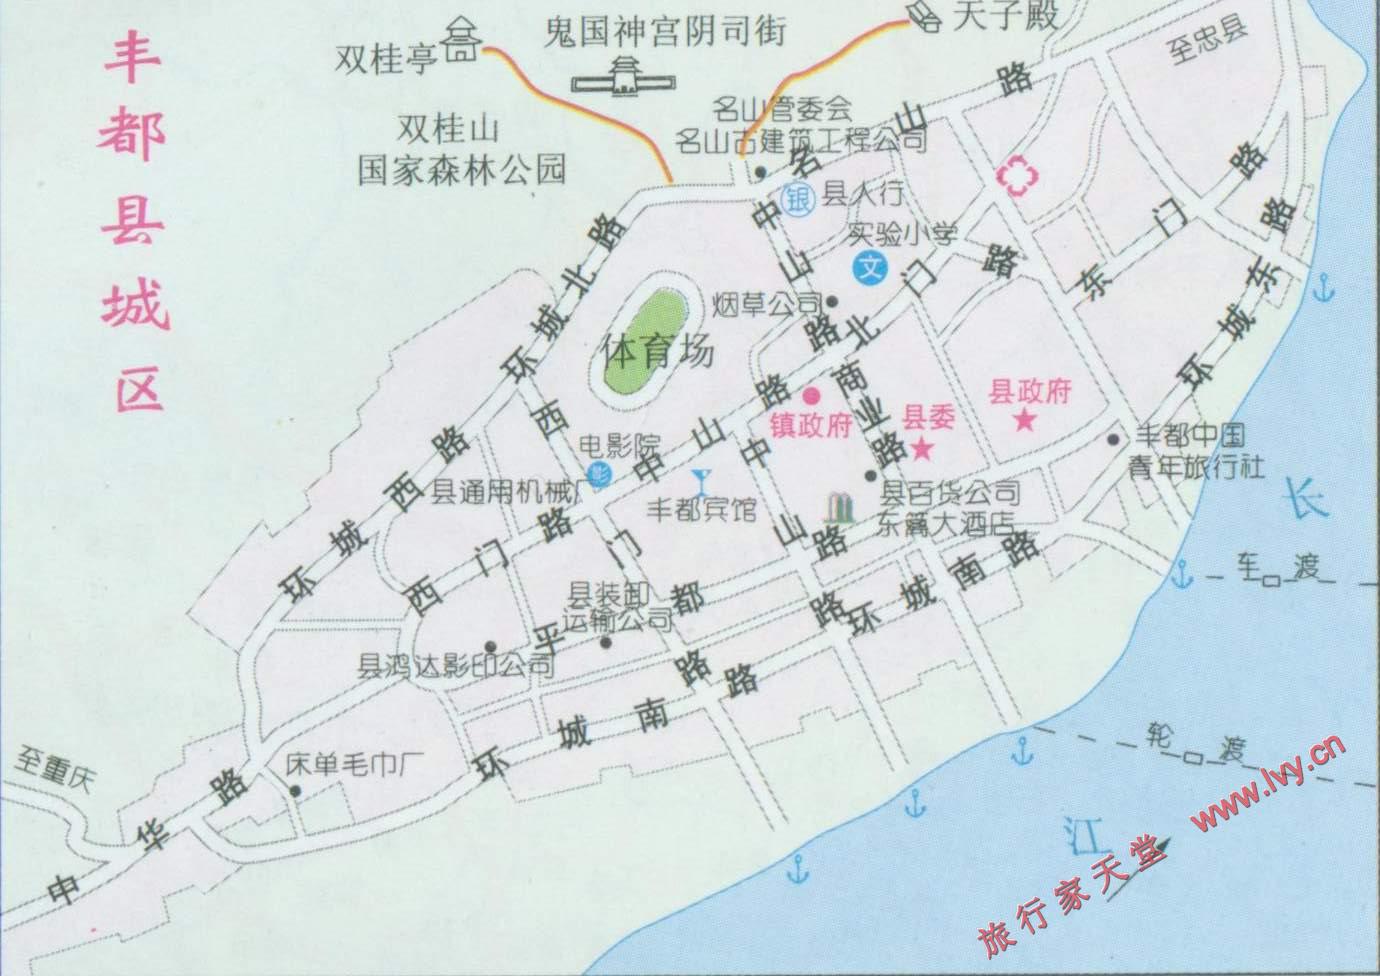 城镇土地集约利用评价——以重庆市丰都县为例图片